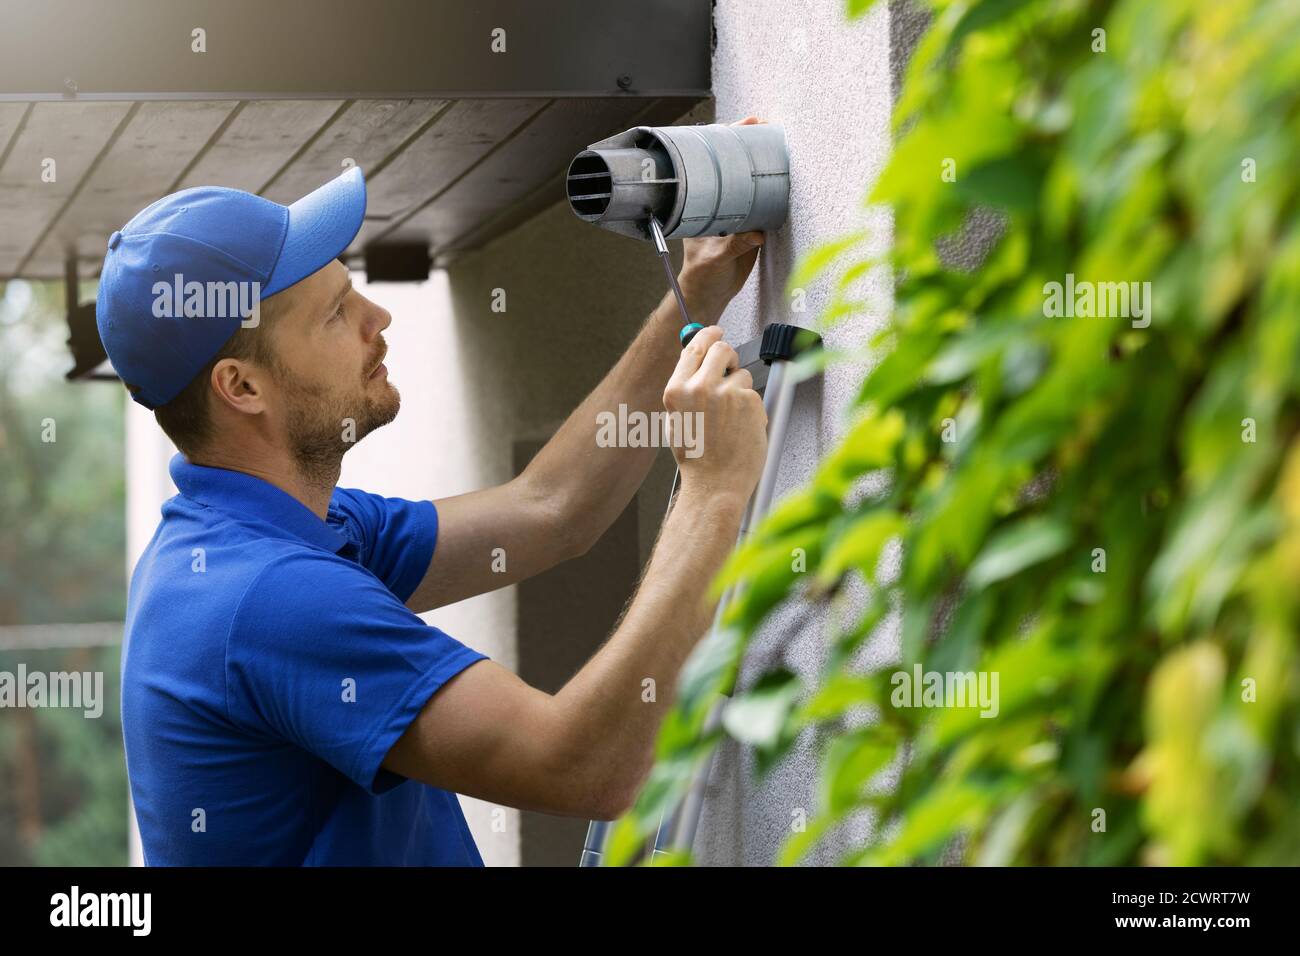 hlk-Servicemitarbeiter, die Wartung und Reparatur von Zentralgas durchführen Heizkessel Rauchkamin auf Haus außen Stockfoto